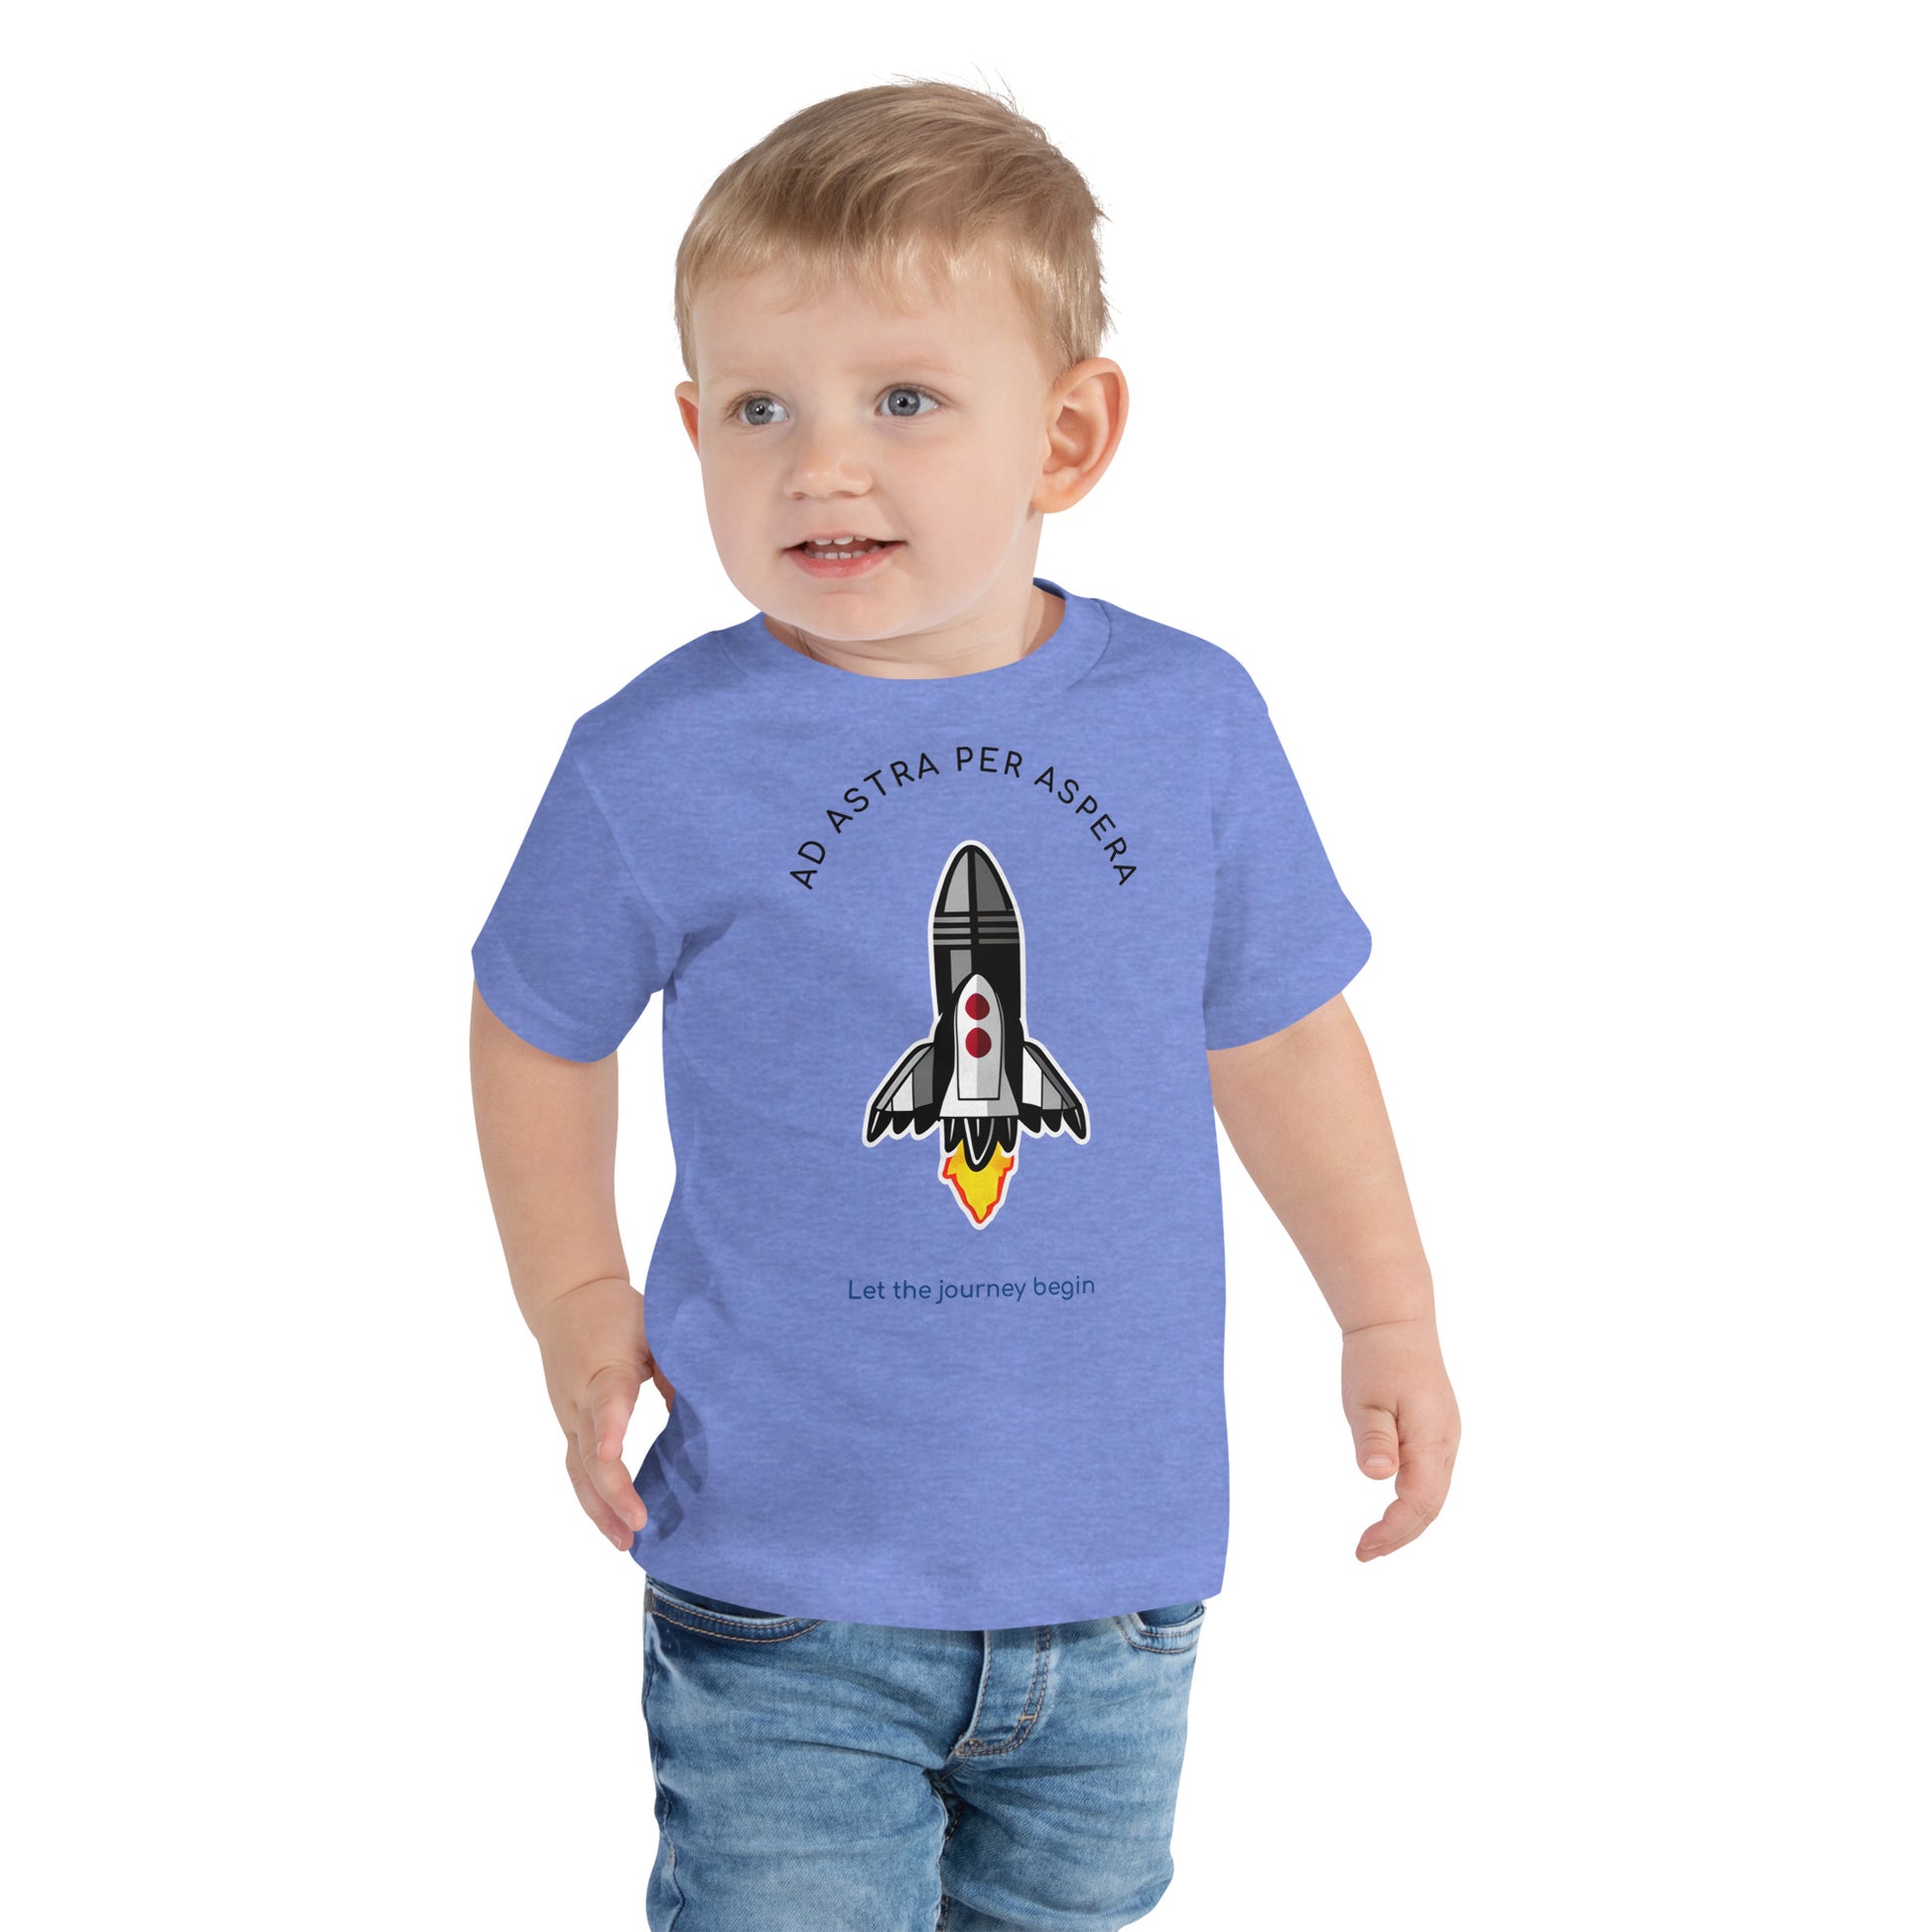 3 year old boy wearing blue rocket shirt